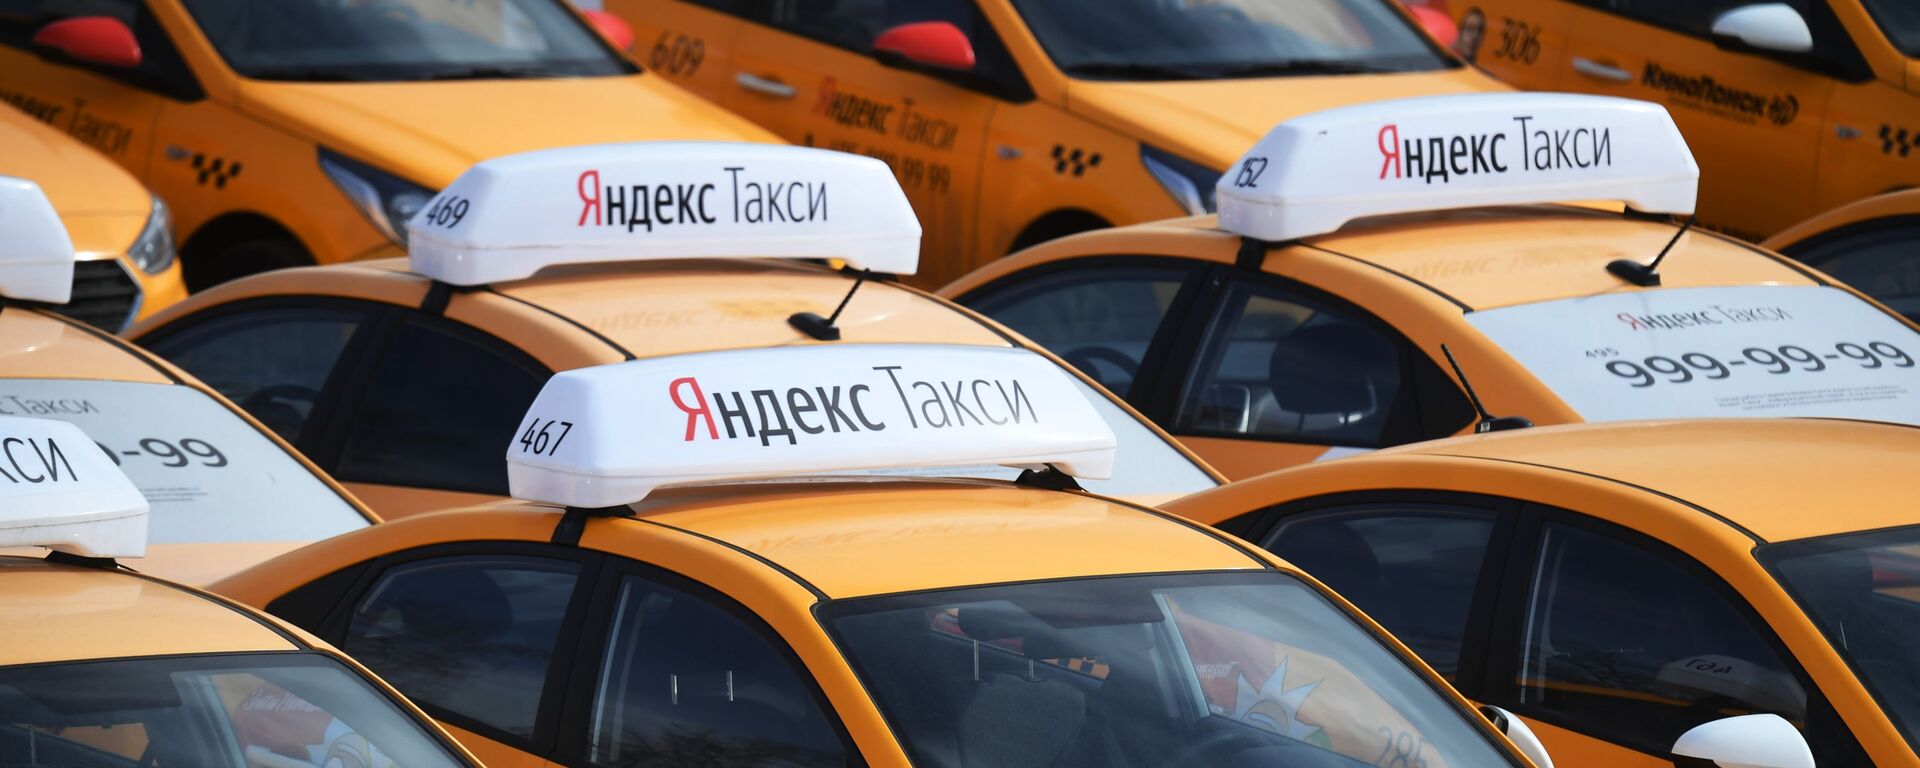 Автомобили Яндекс Такси. Архивное фото - Sputnik Кыргызстан, 1920, 09.03.2021